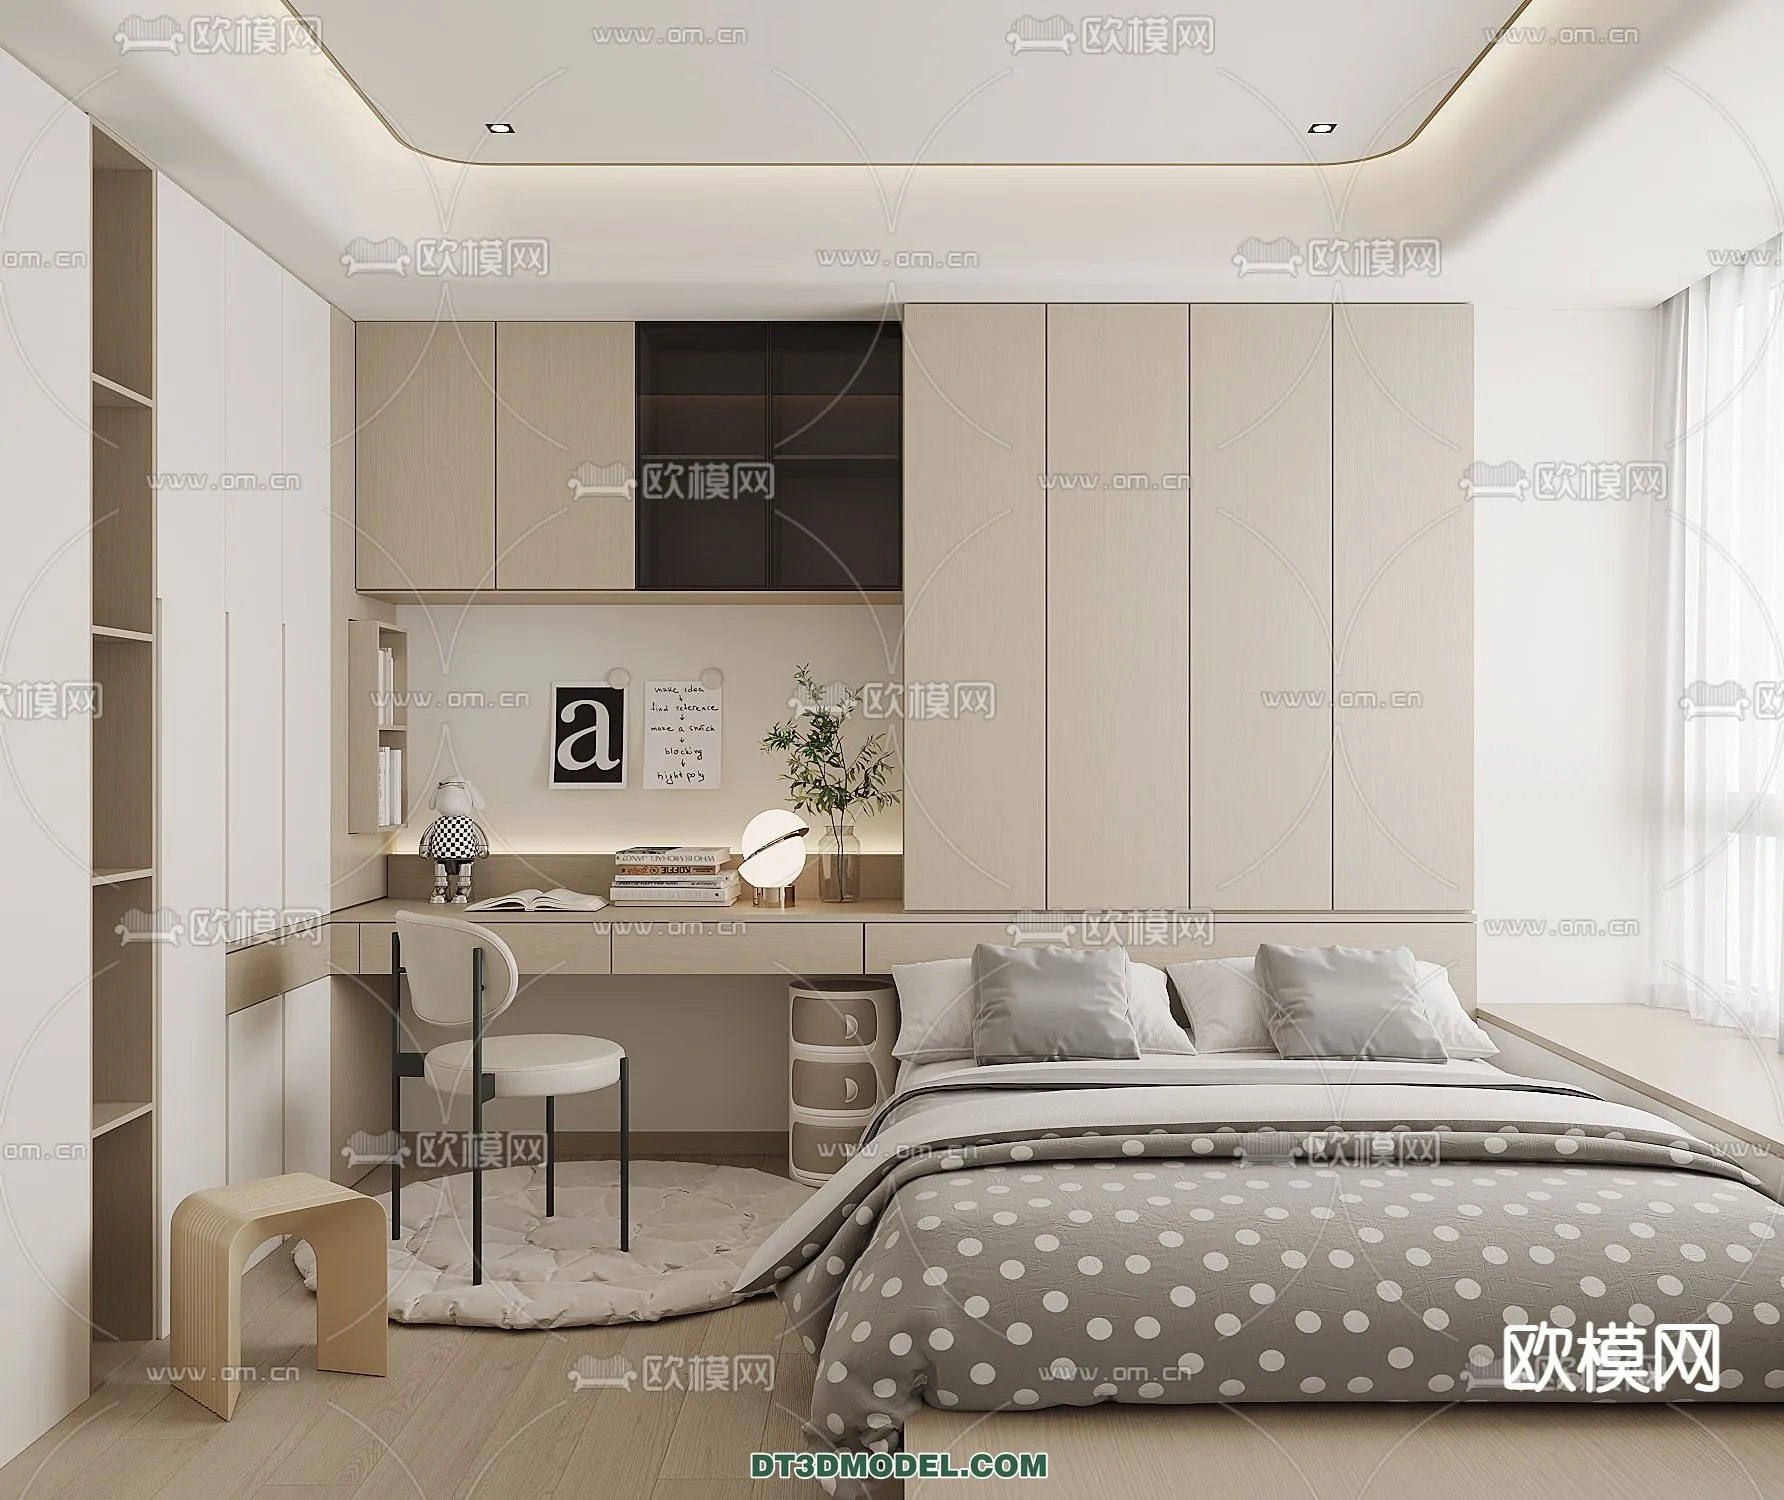 Tatami Bedroom – Japan Bedroom – 3D Scene – 087